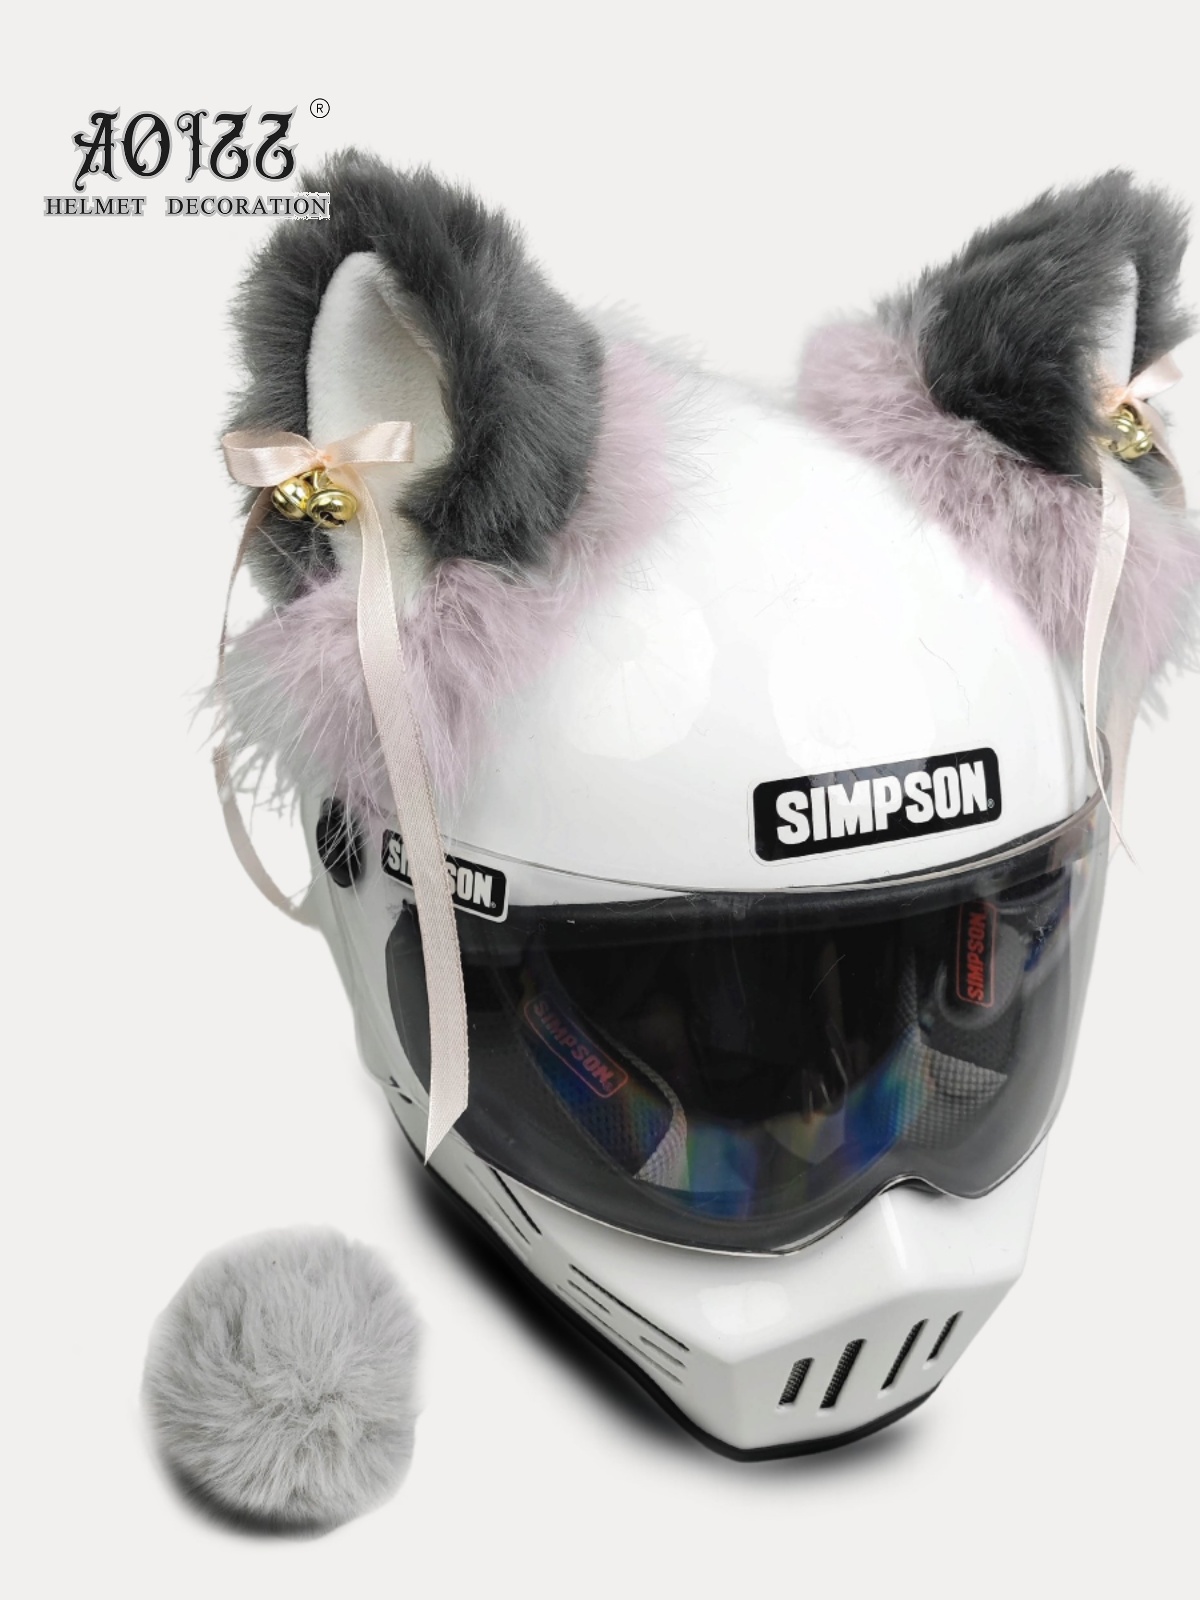 高级豆沙灰铃铛飘带头盔毛绒猫耳朵装饰可拆卸机车滑雪冰球摩托